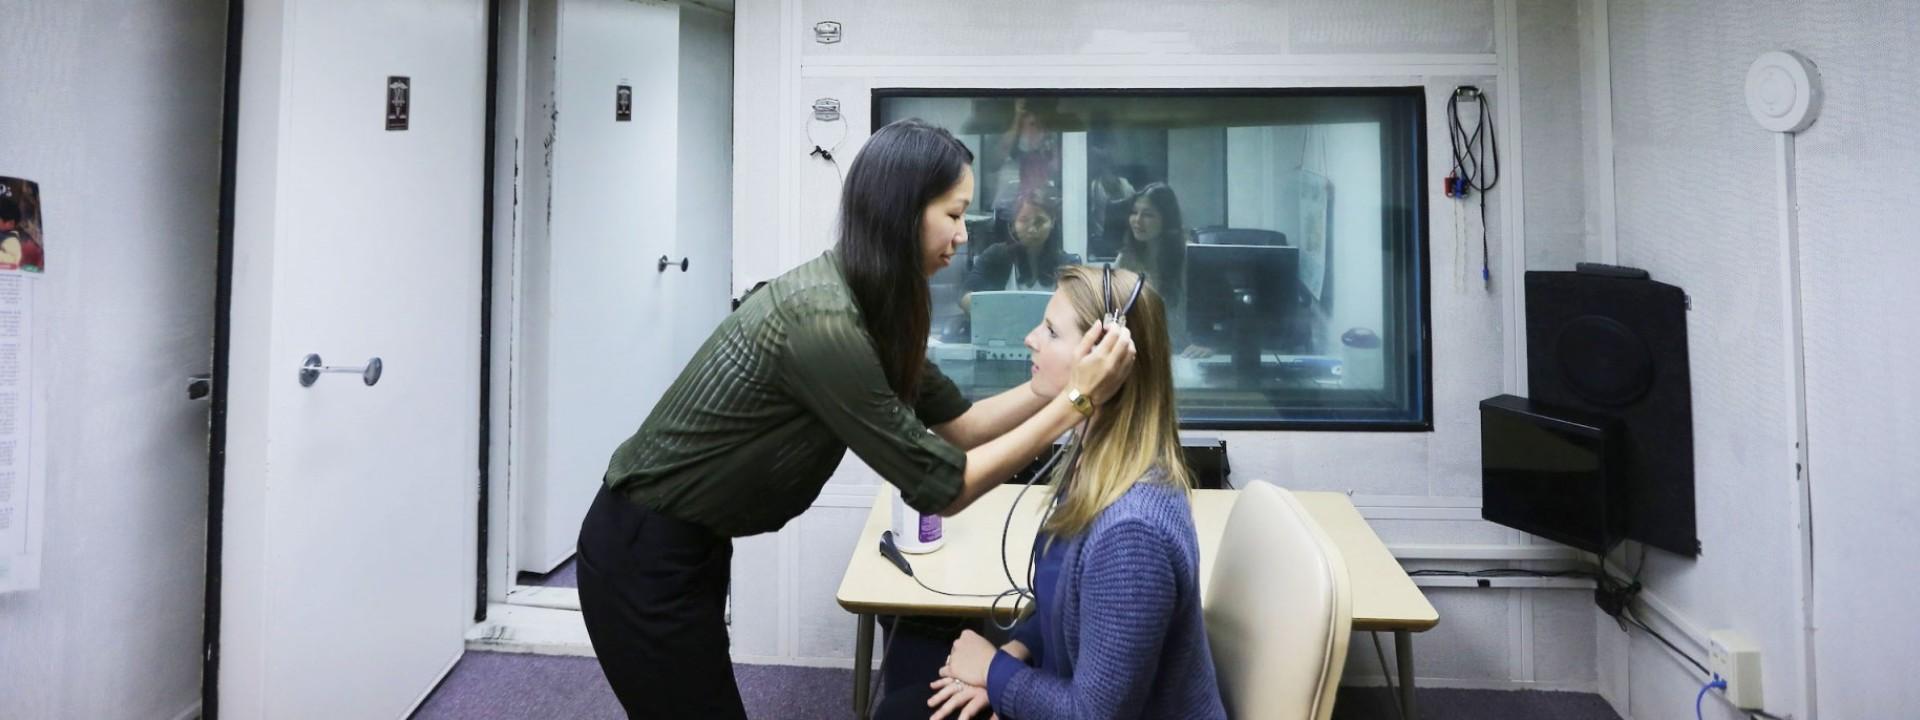 听力学学生在实验室给她的病人戴耳机. 